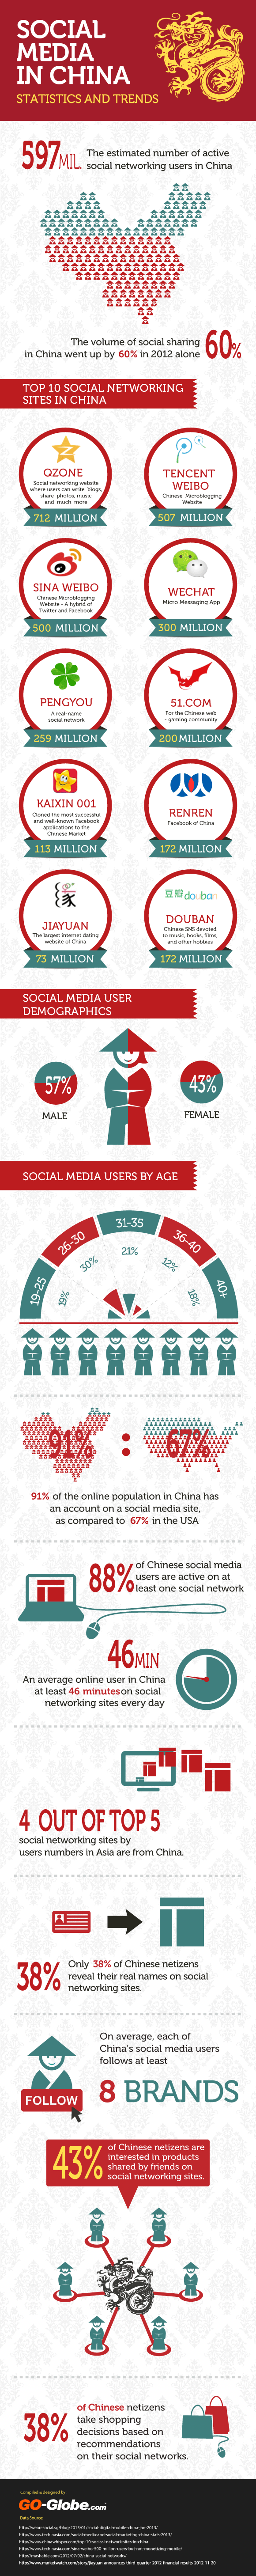 Social Media Landscape in China 2013